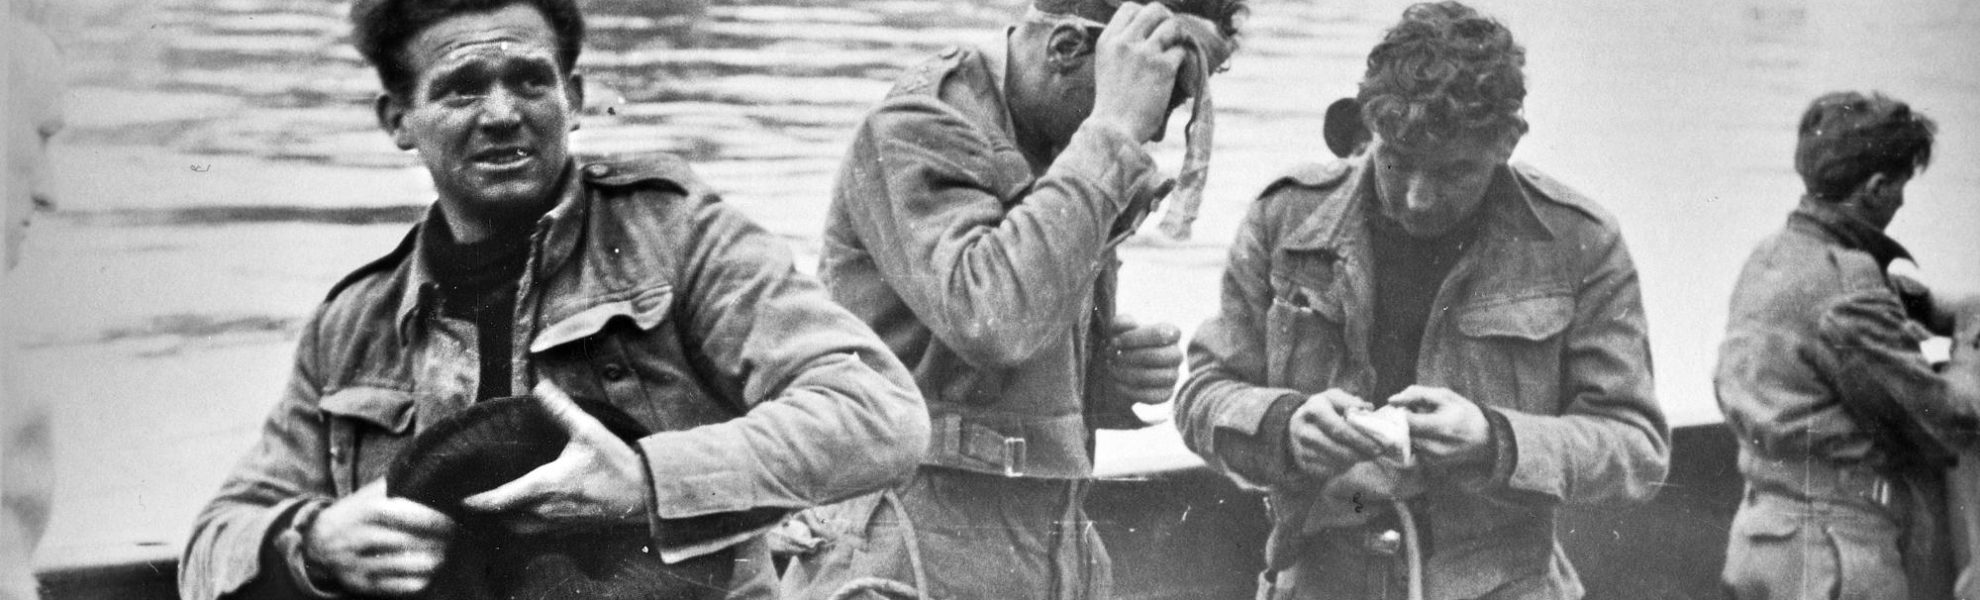 Des soldats britanniques faits prisonniers sont réunis à bord d'un navire dans le bassin de Saint-Nazaire.